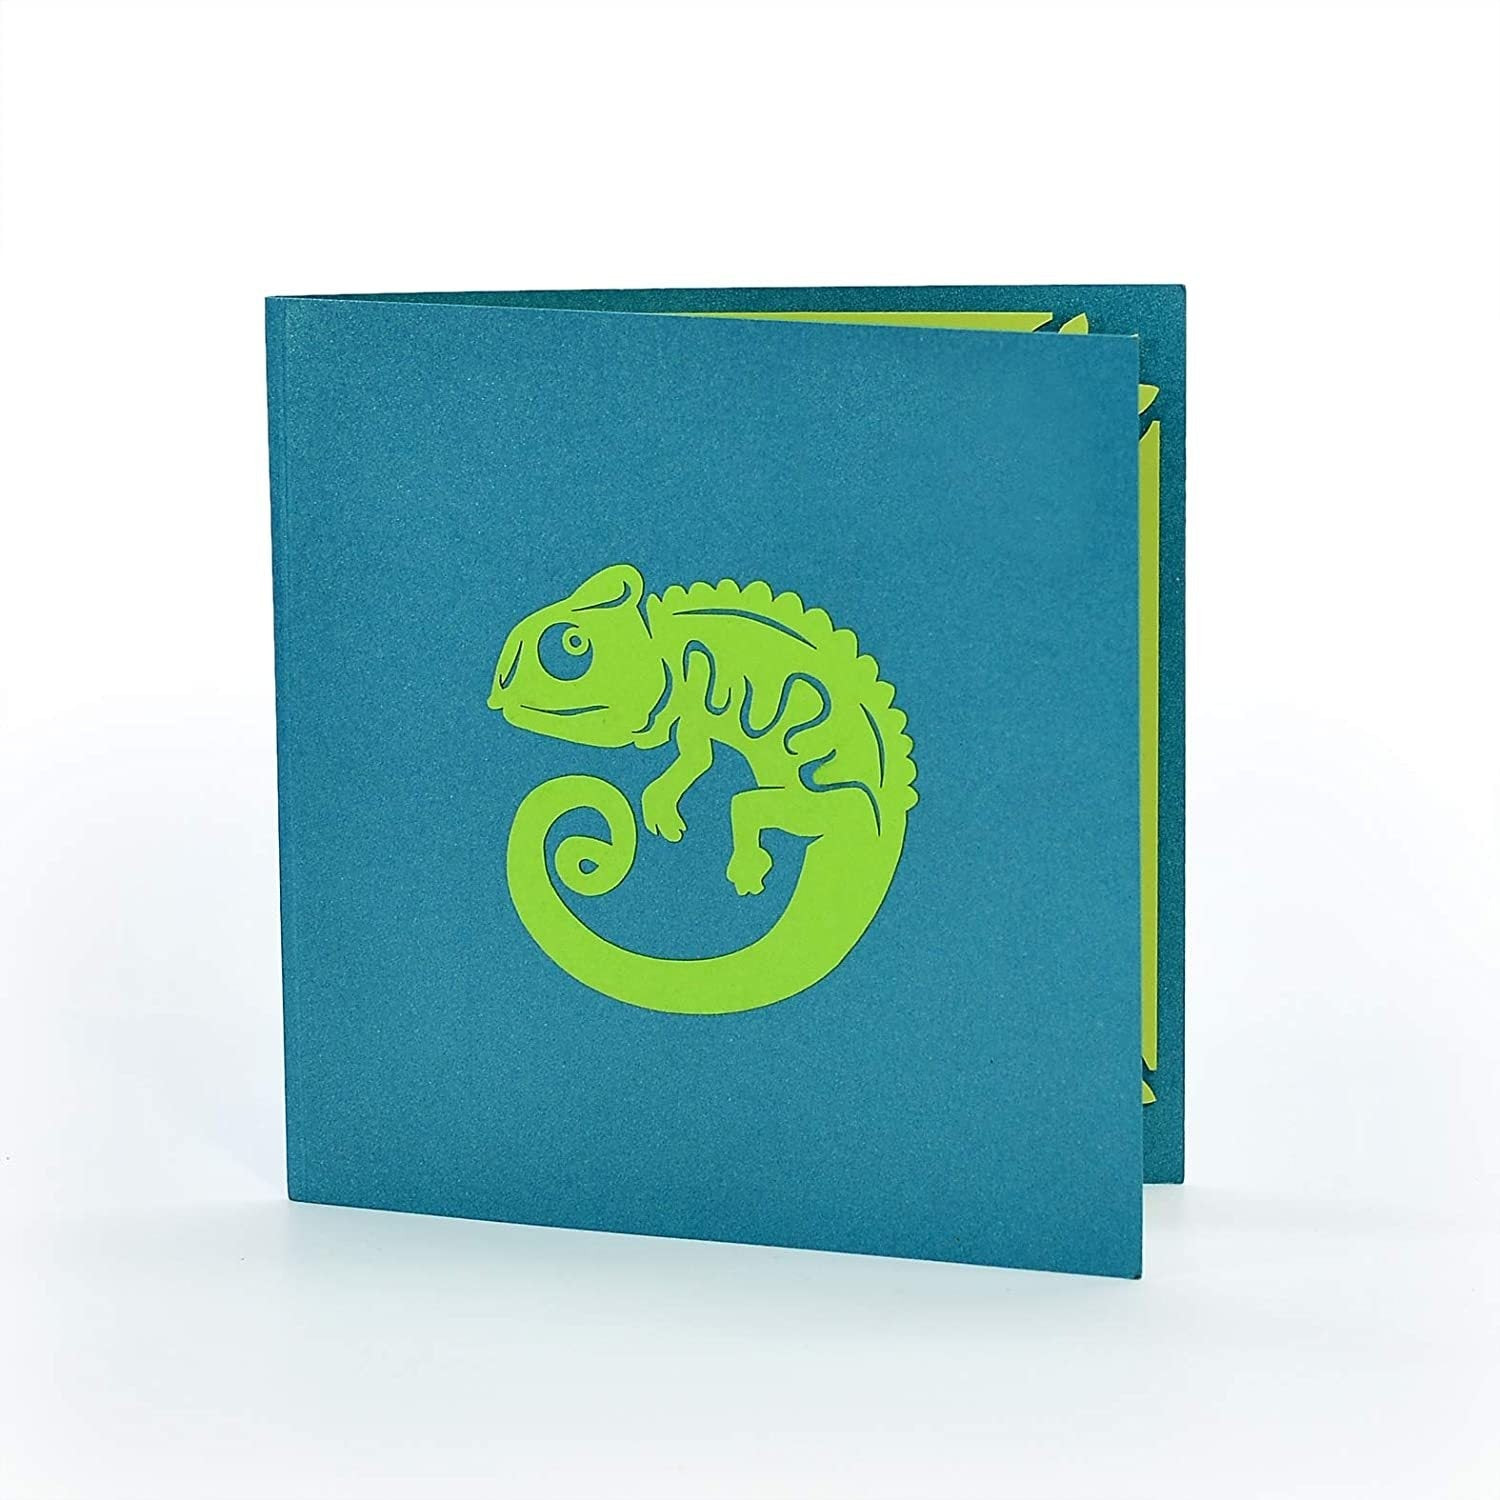 Chameleon DIY 3D Pop Up Card Kit